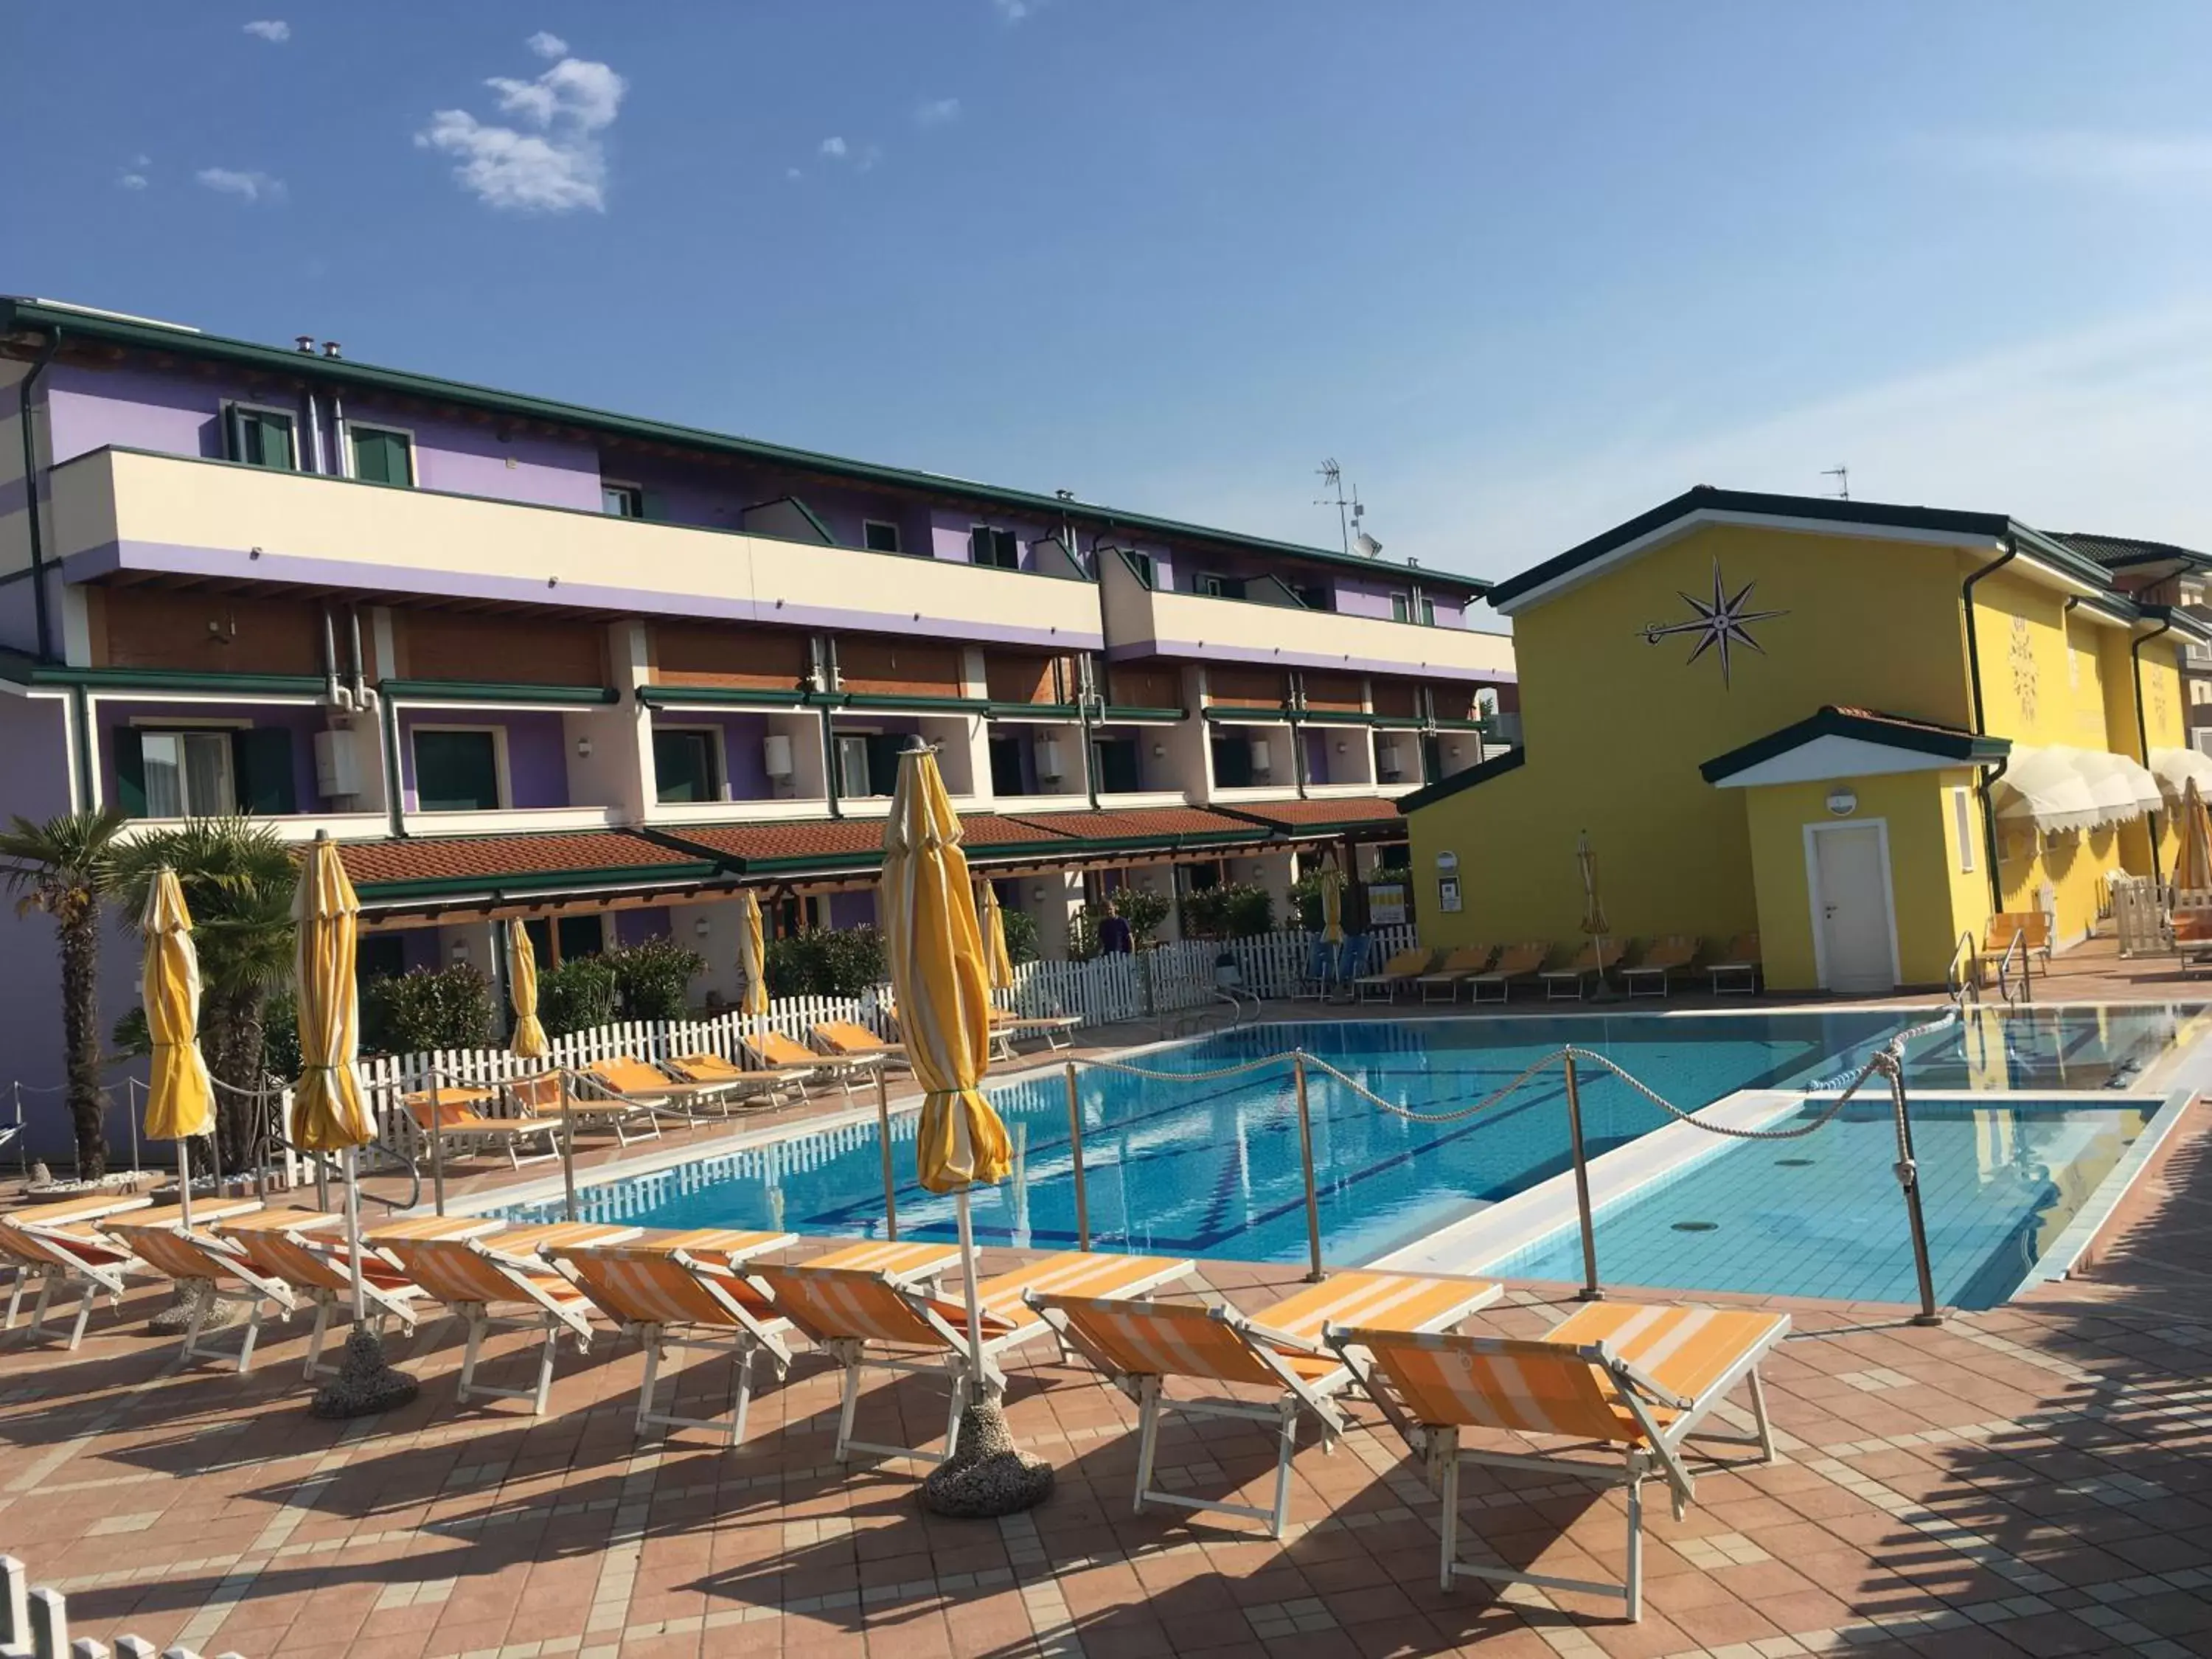 Swimming Pool in Villaggio Margherita